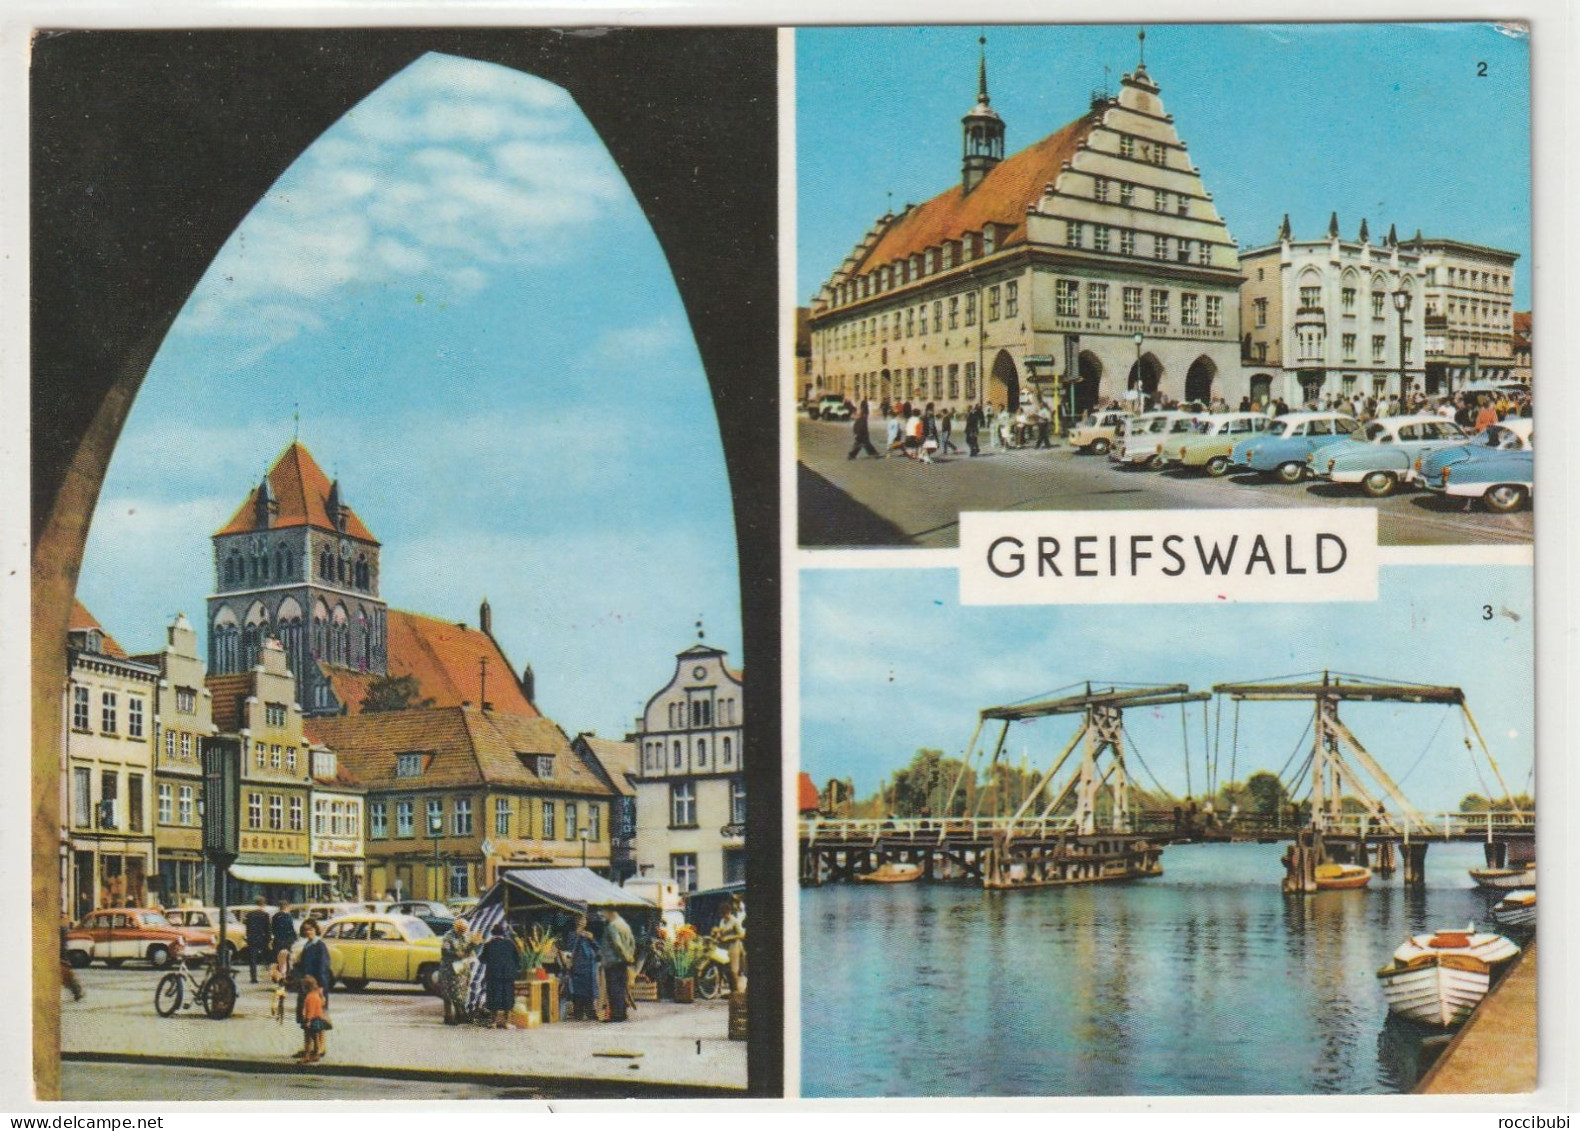 Greifswald, Mecklenburg-Vorpommern - Greifswald